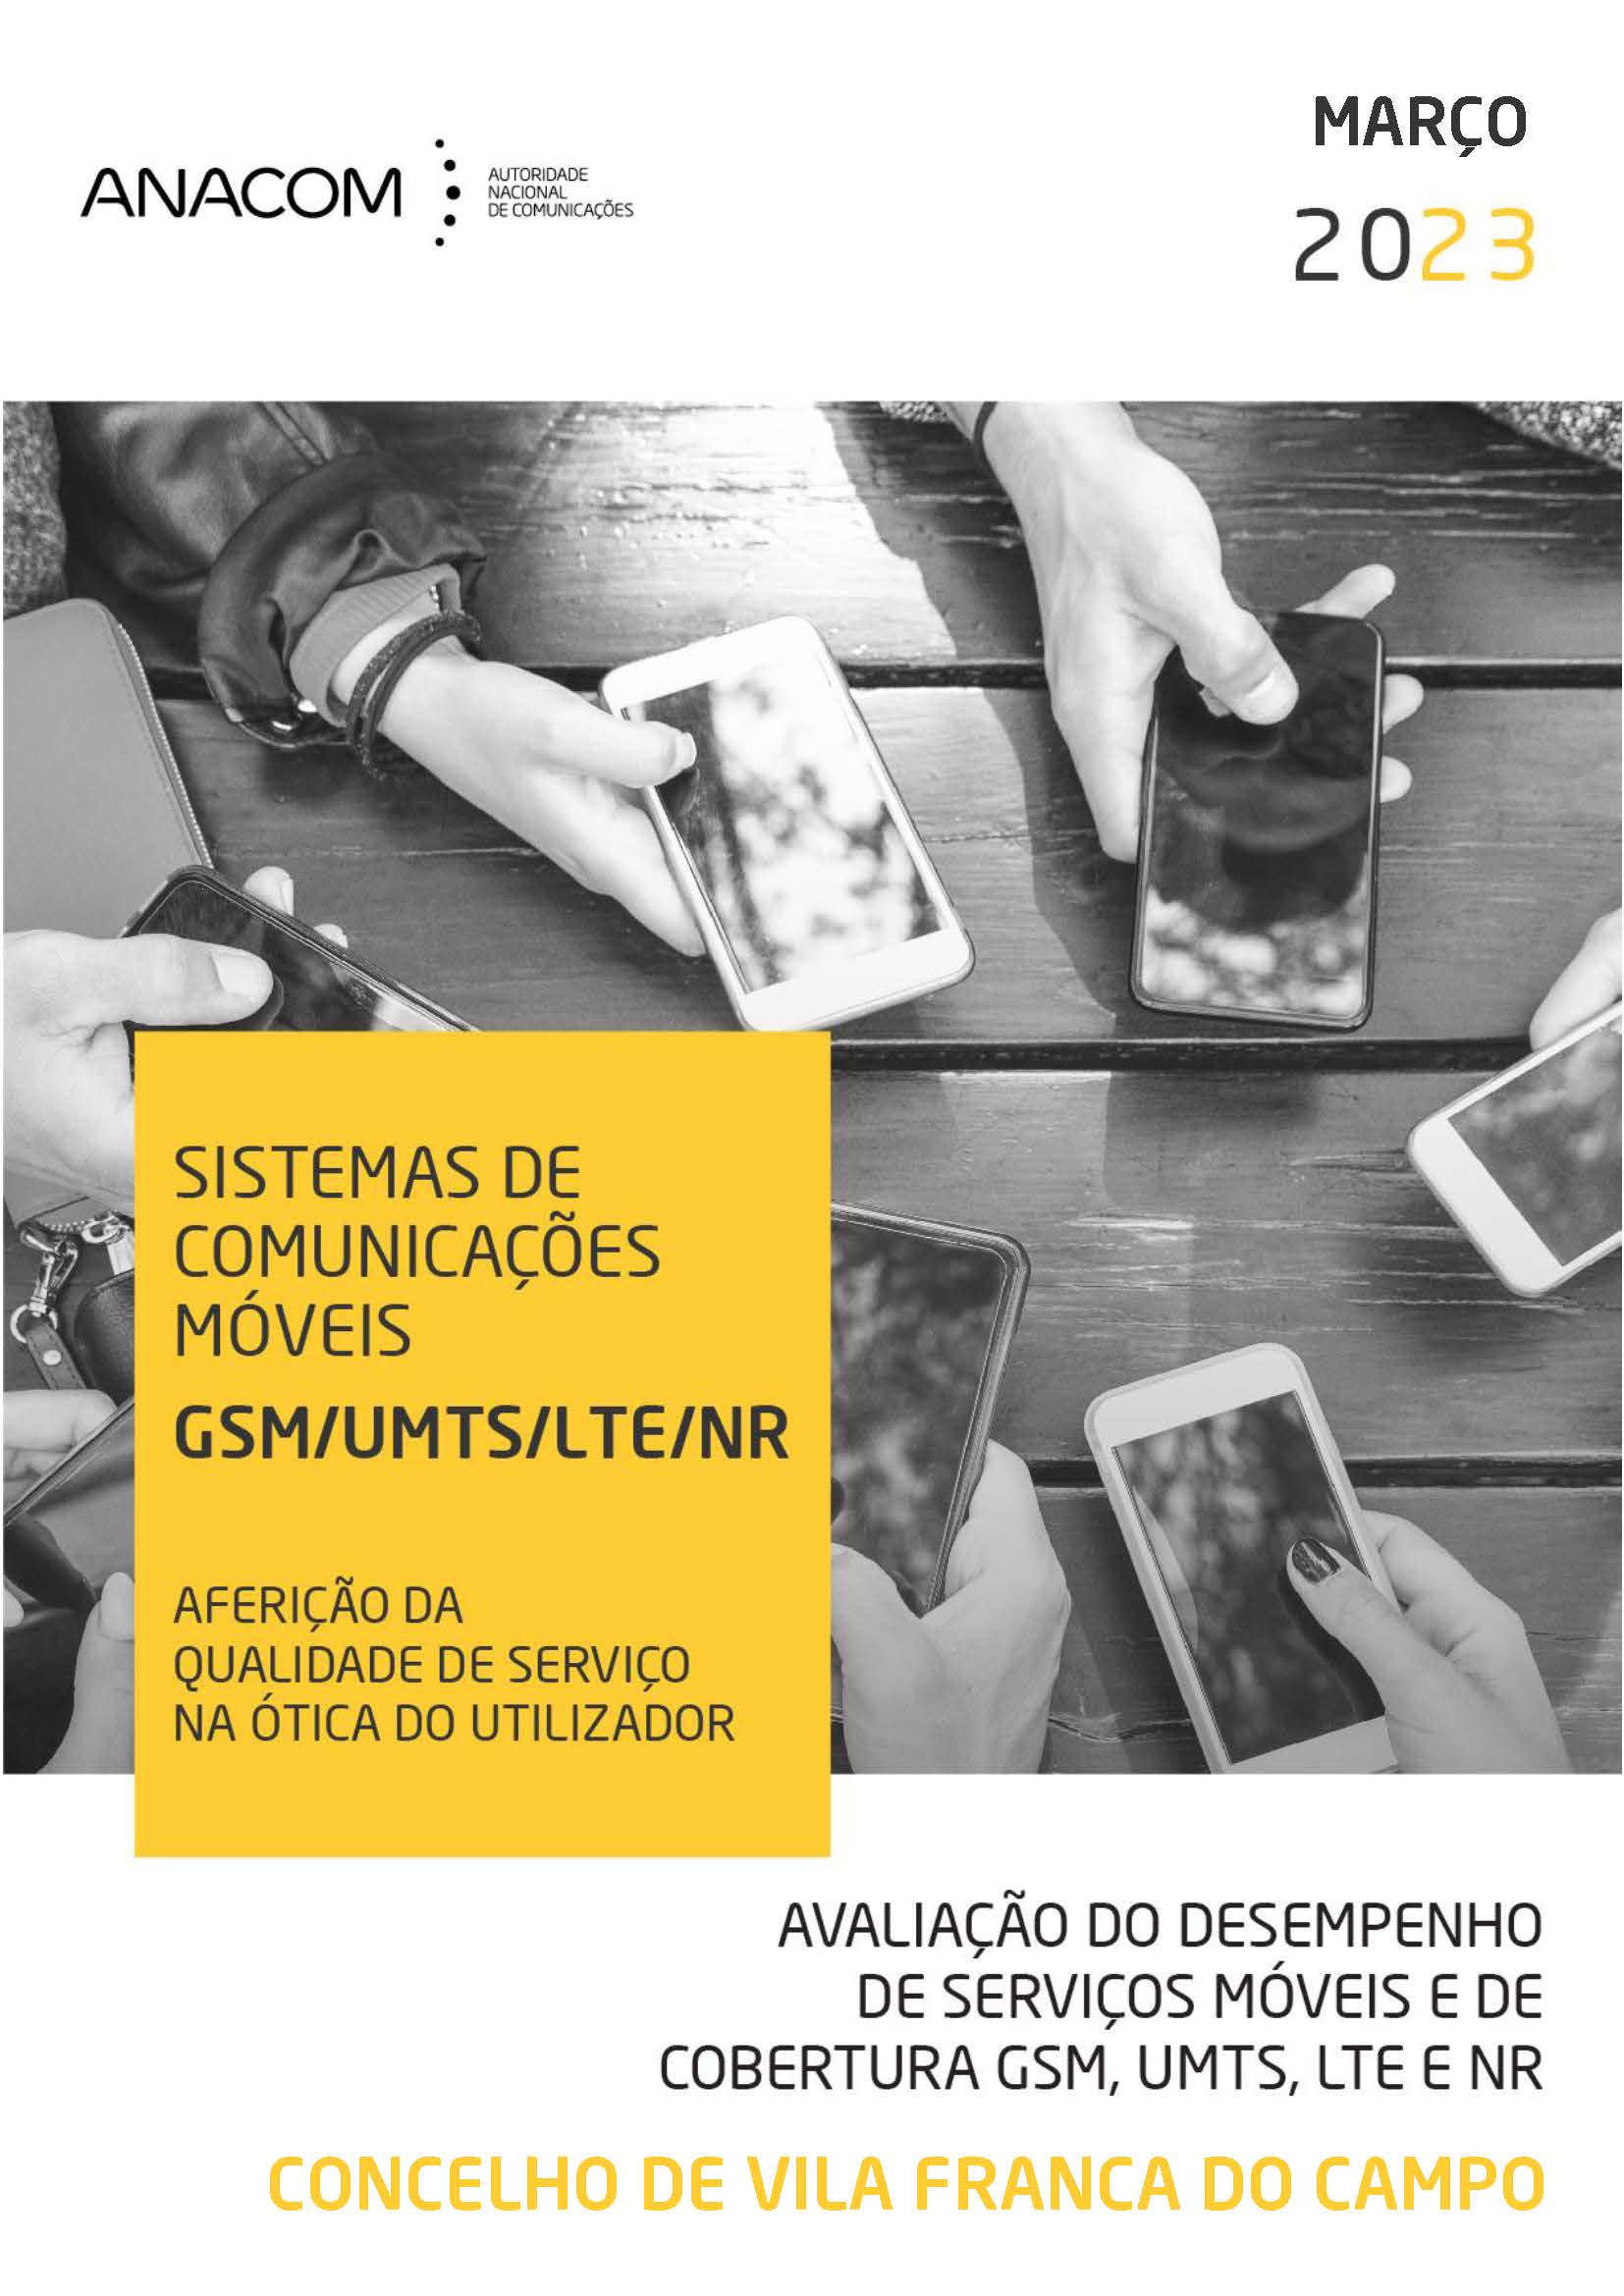 Avaliação do desempenho de serviços móveis e de cobertura GSM, UMTS, LTE e NR no Concelho de Vila Franca do Campo (Açores)